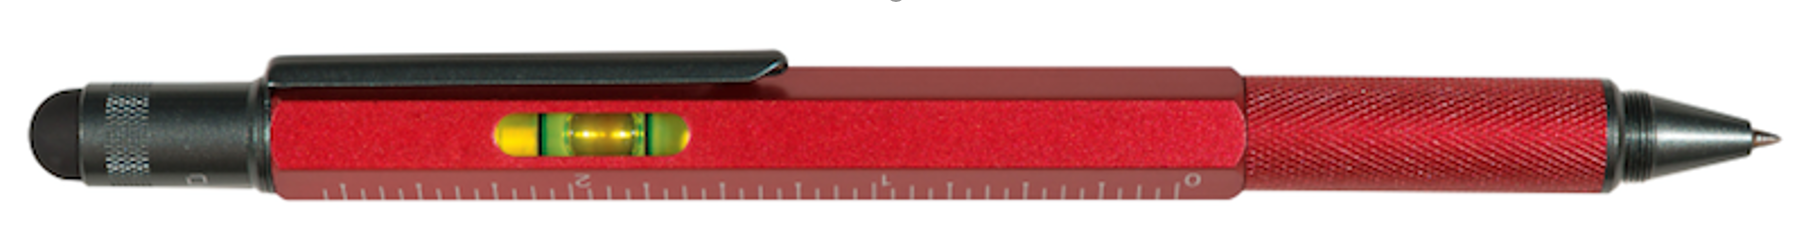 MEMMO MEMMO Level Stylus Tool Pen, Red